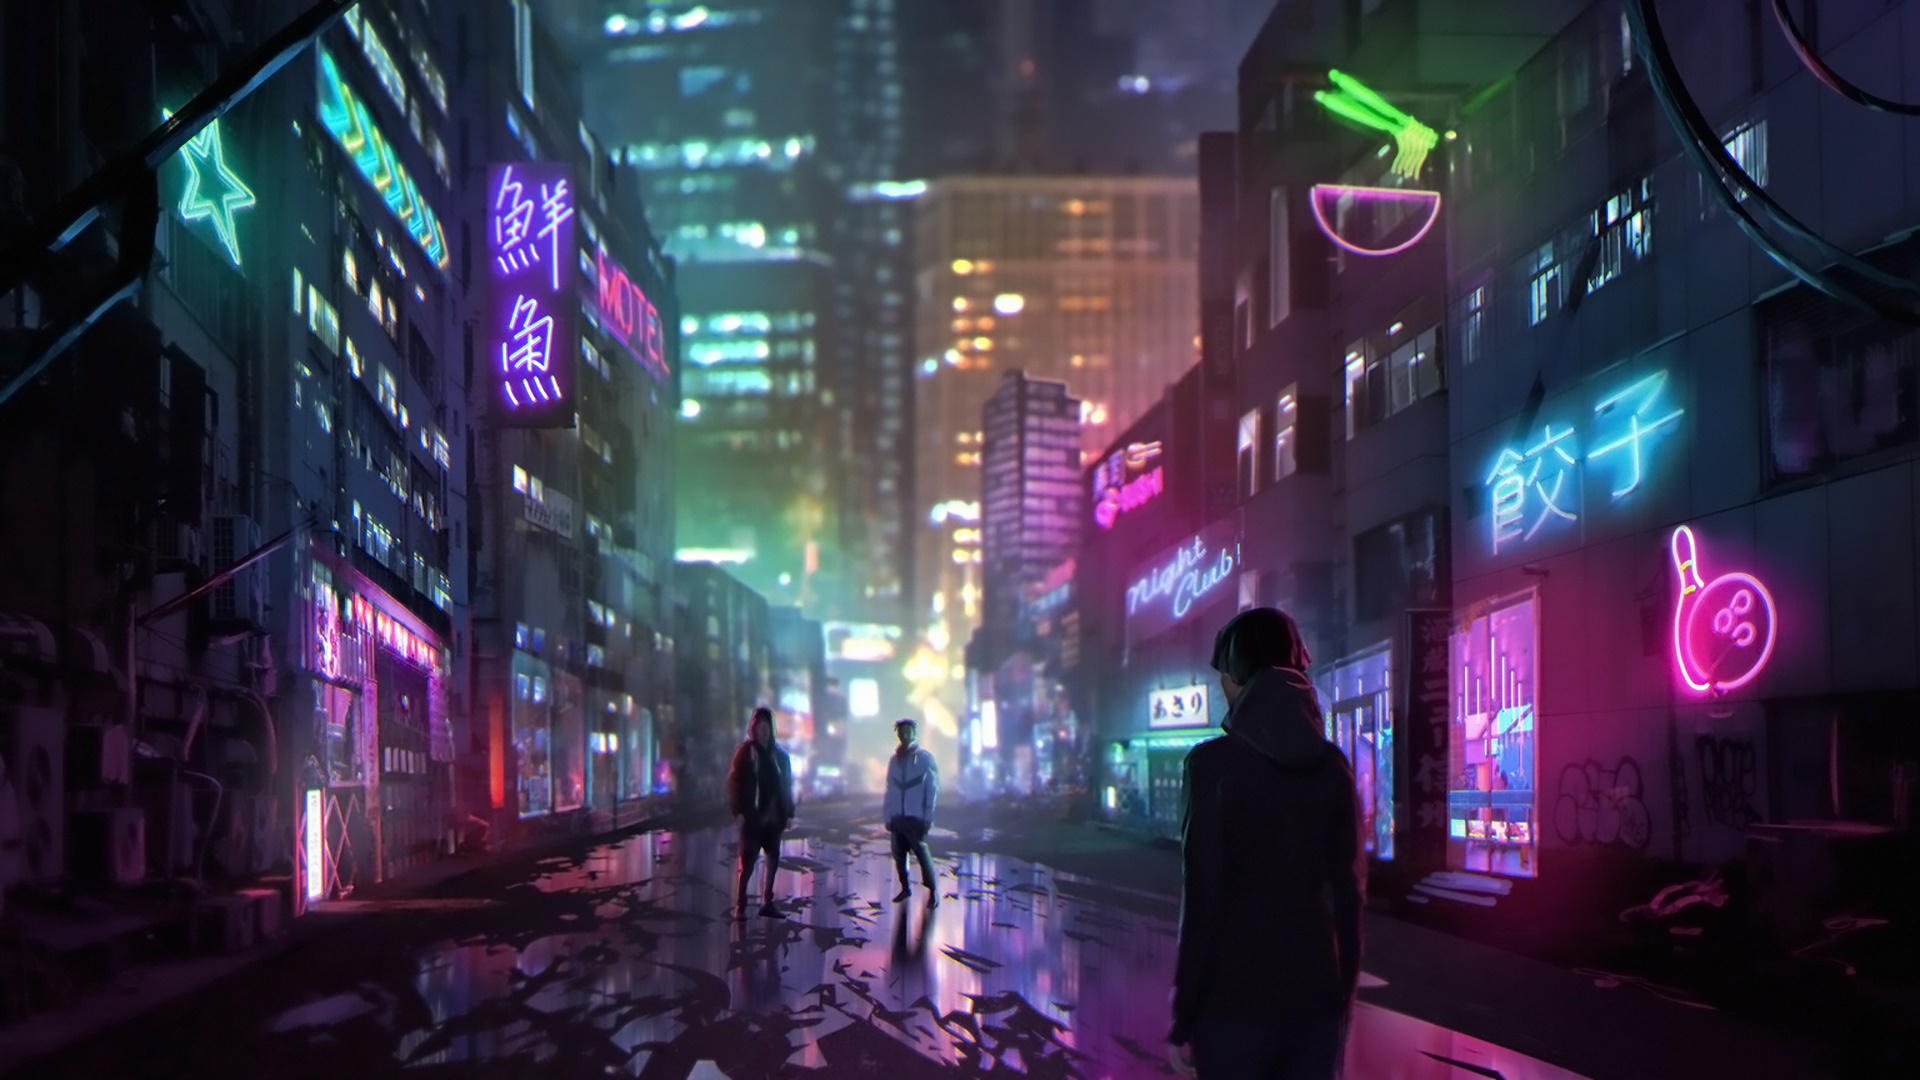 Anime baseado em Cyberpunk: 2077 estreia na Netflix com aprovação